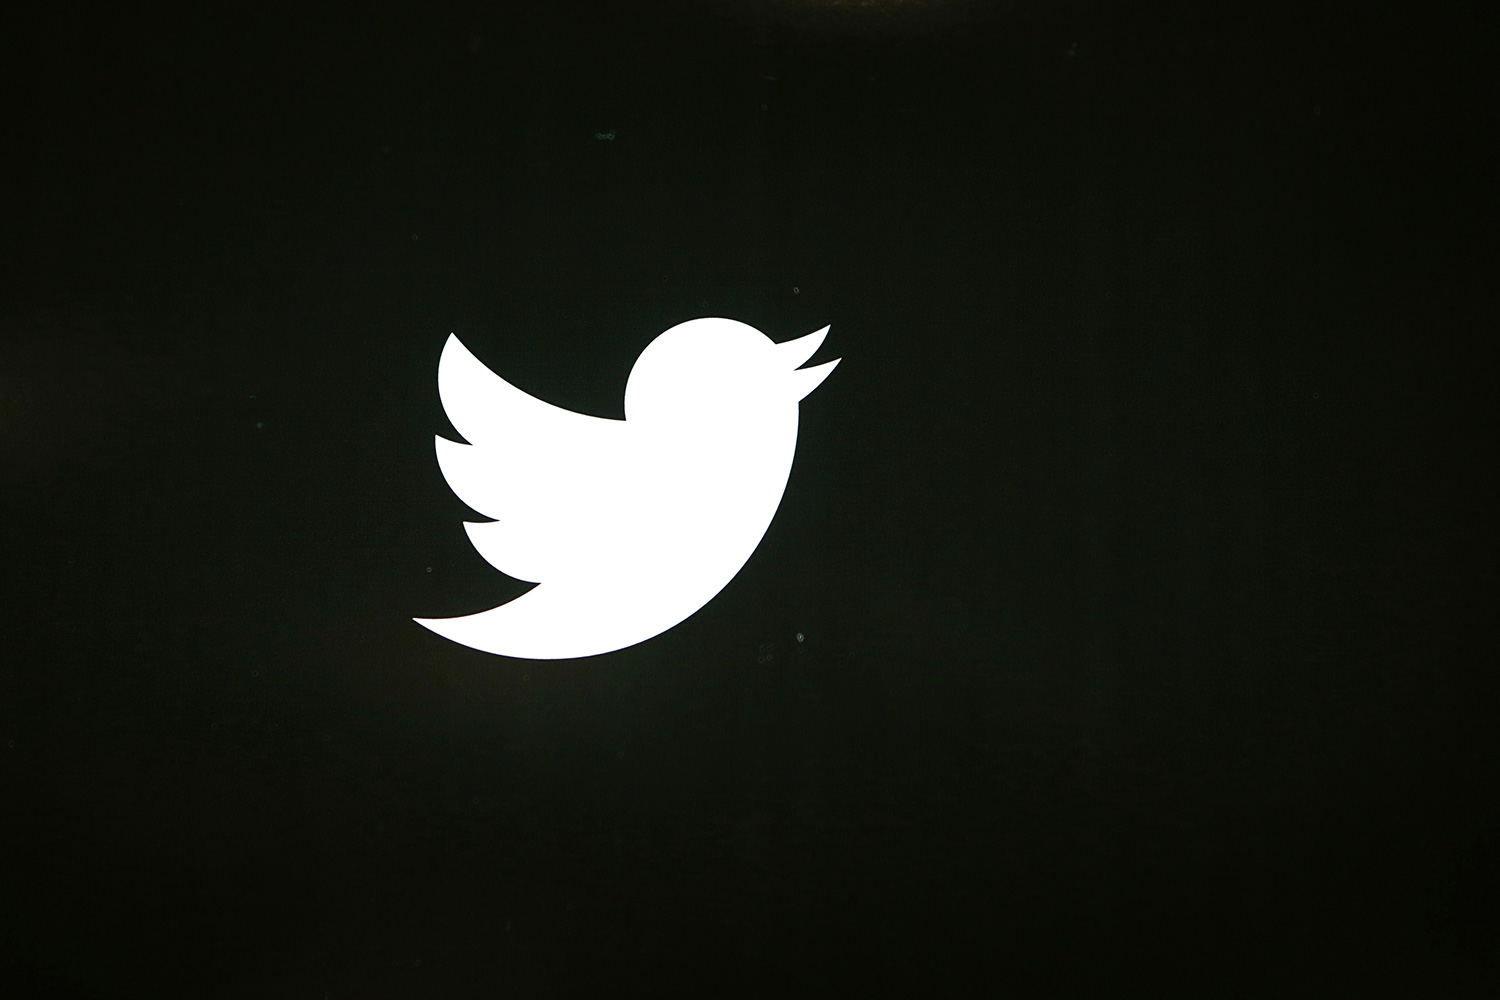 Twitter deniega el acceso a su plataforma de datos a las agencias de inteligencia